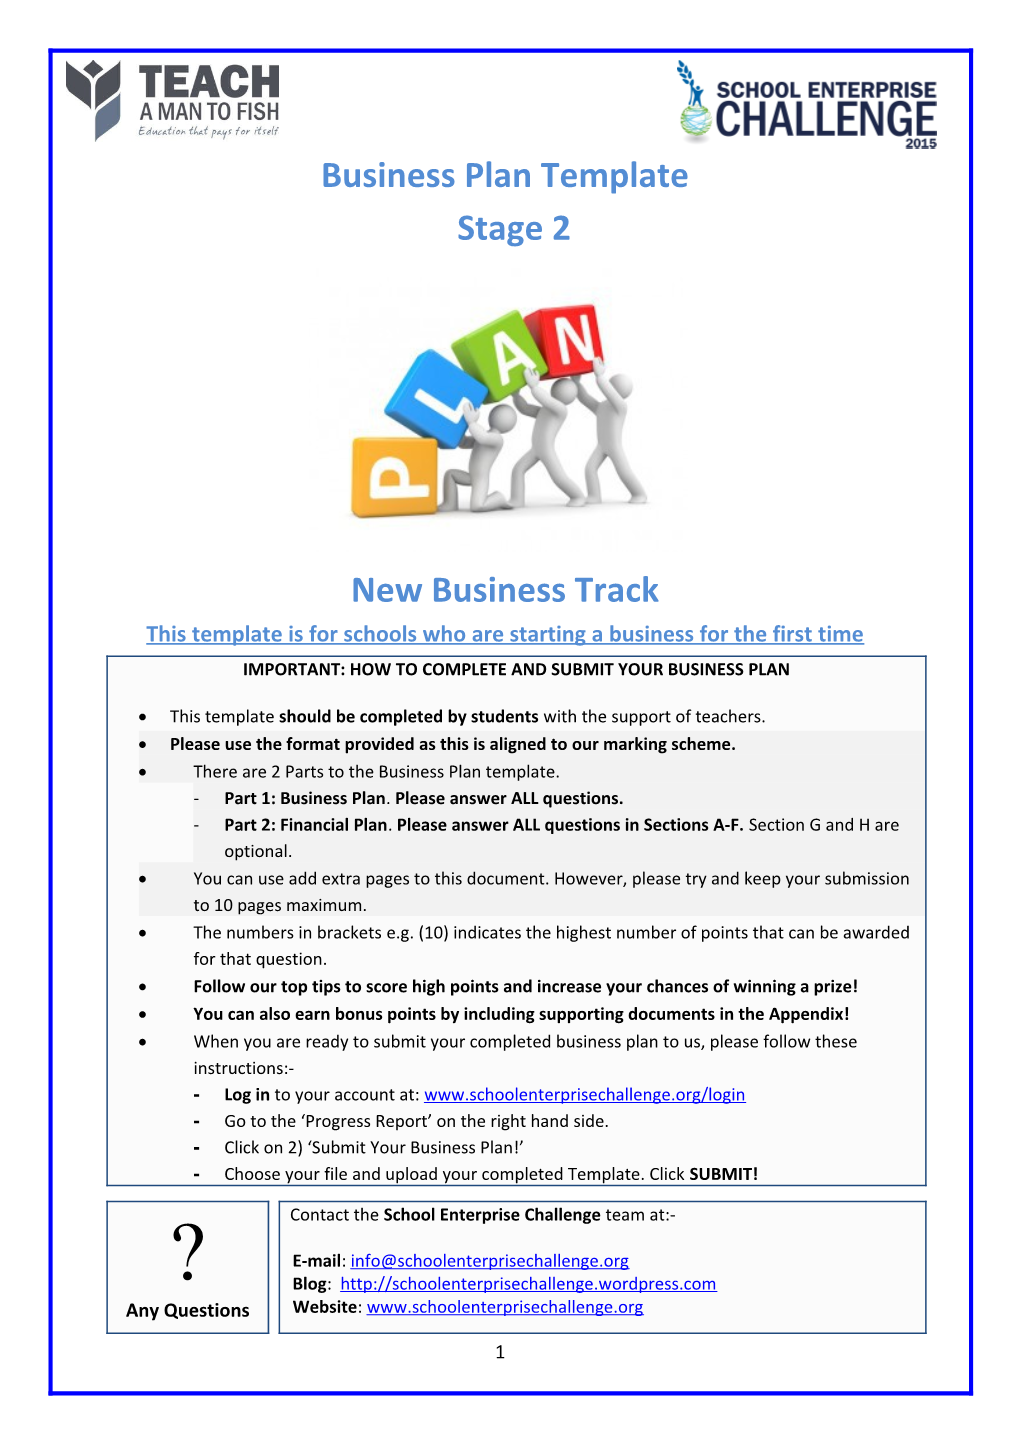 School Enterprise Challenge Business Idea Template s8